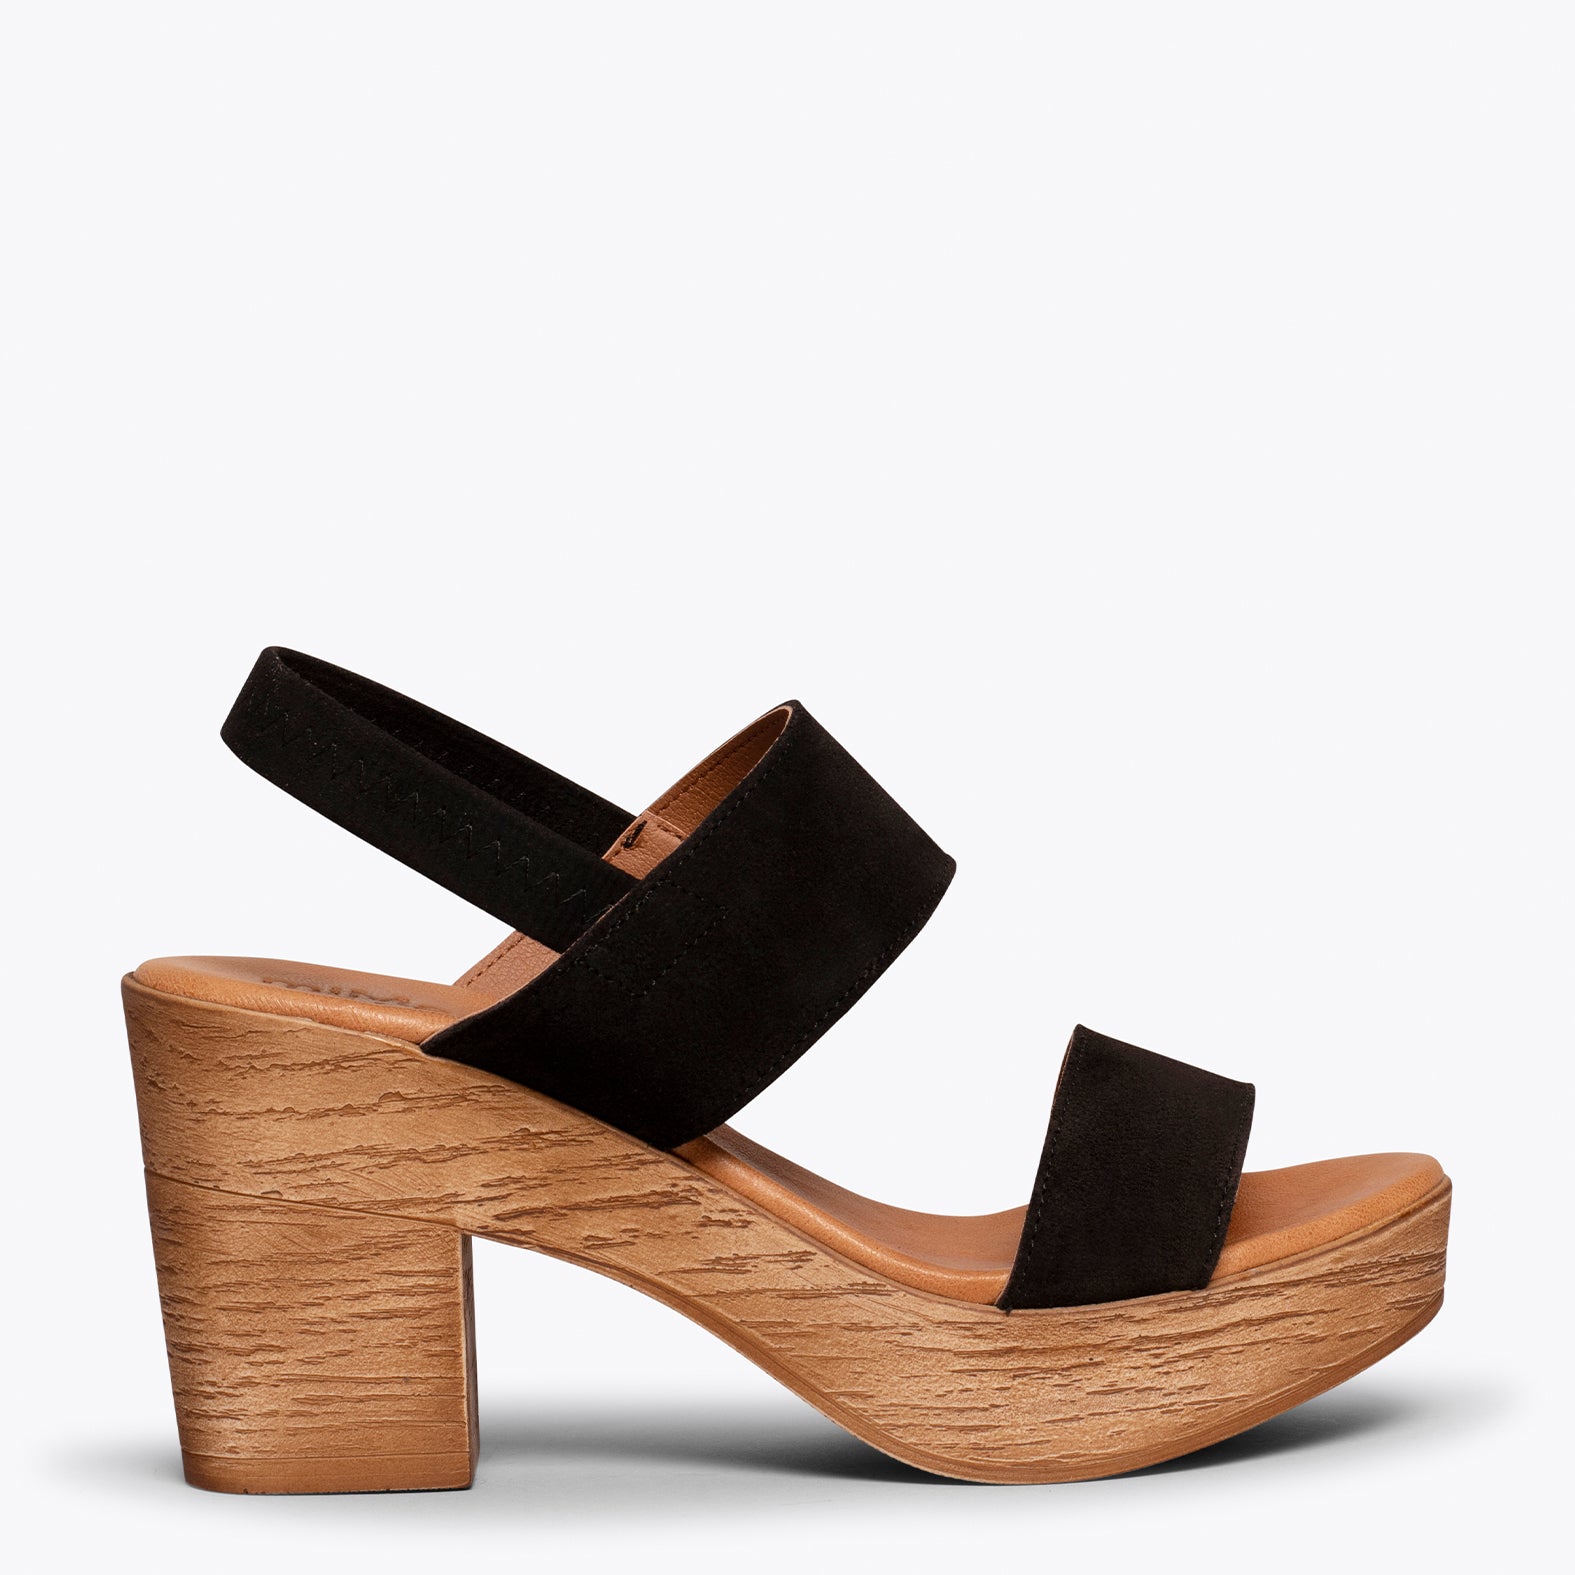 PLATFORM – BLACK platform sandals with straps